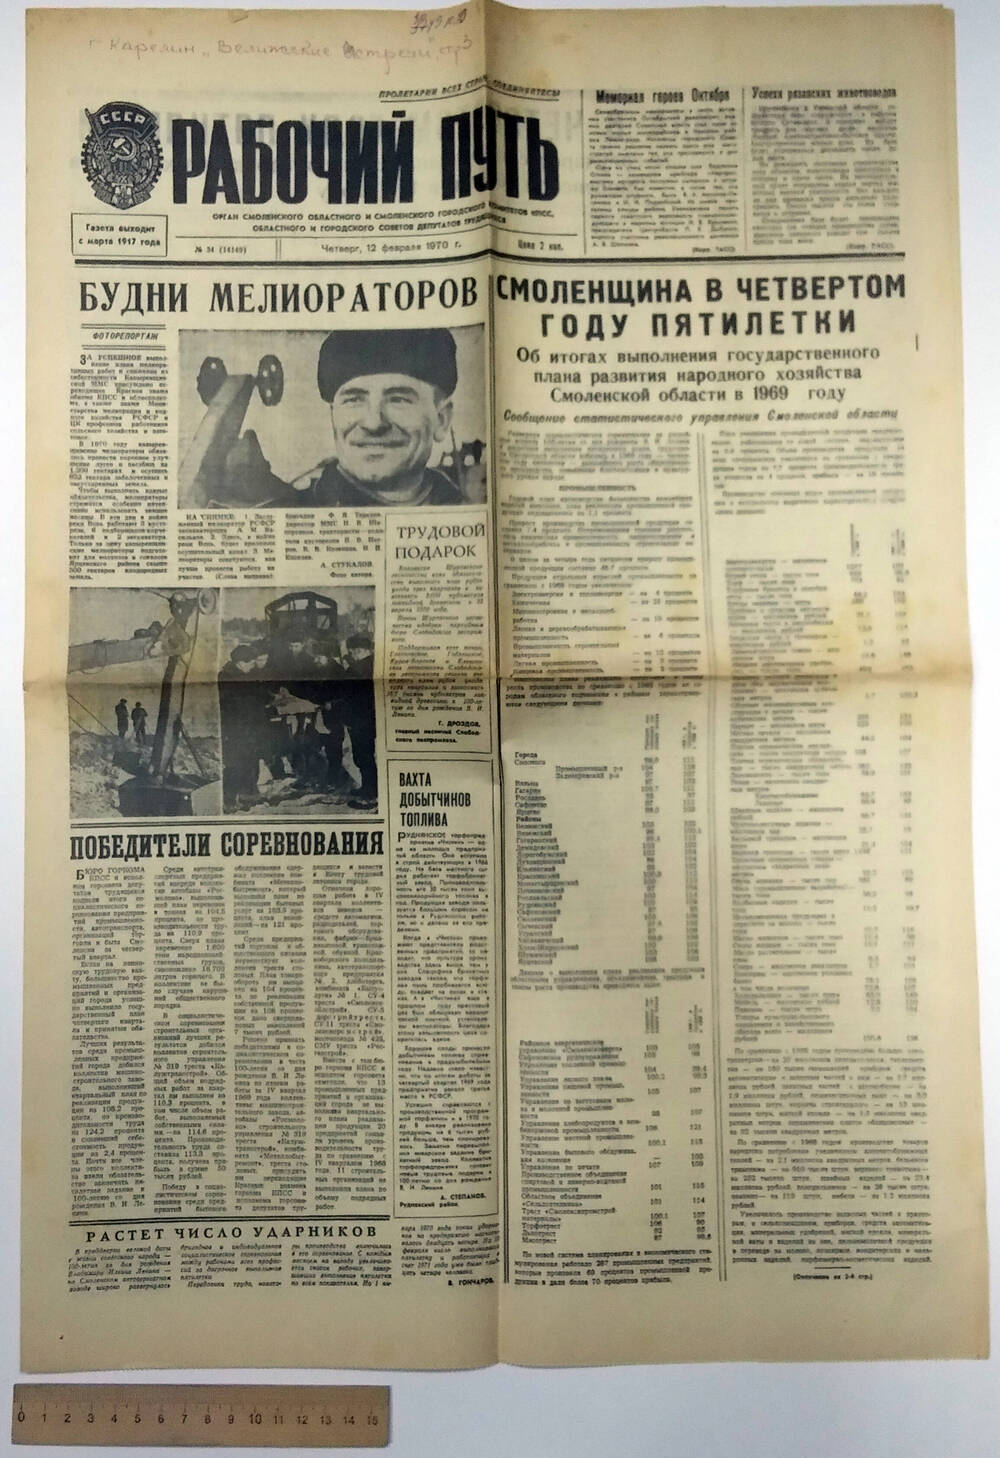 Статья в газете «Рабочий путь» №34 (14149) Г. Карелин «Велижские встречи» заметки Белорусского журналиста